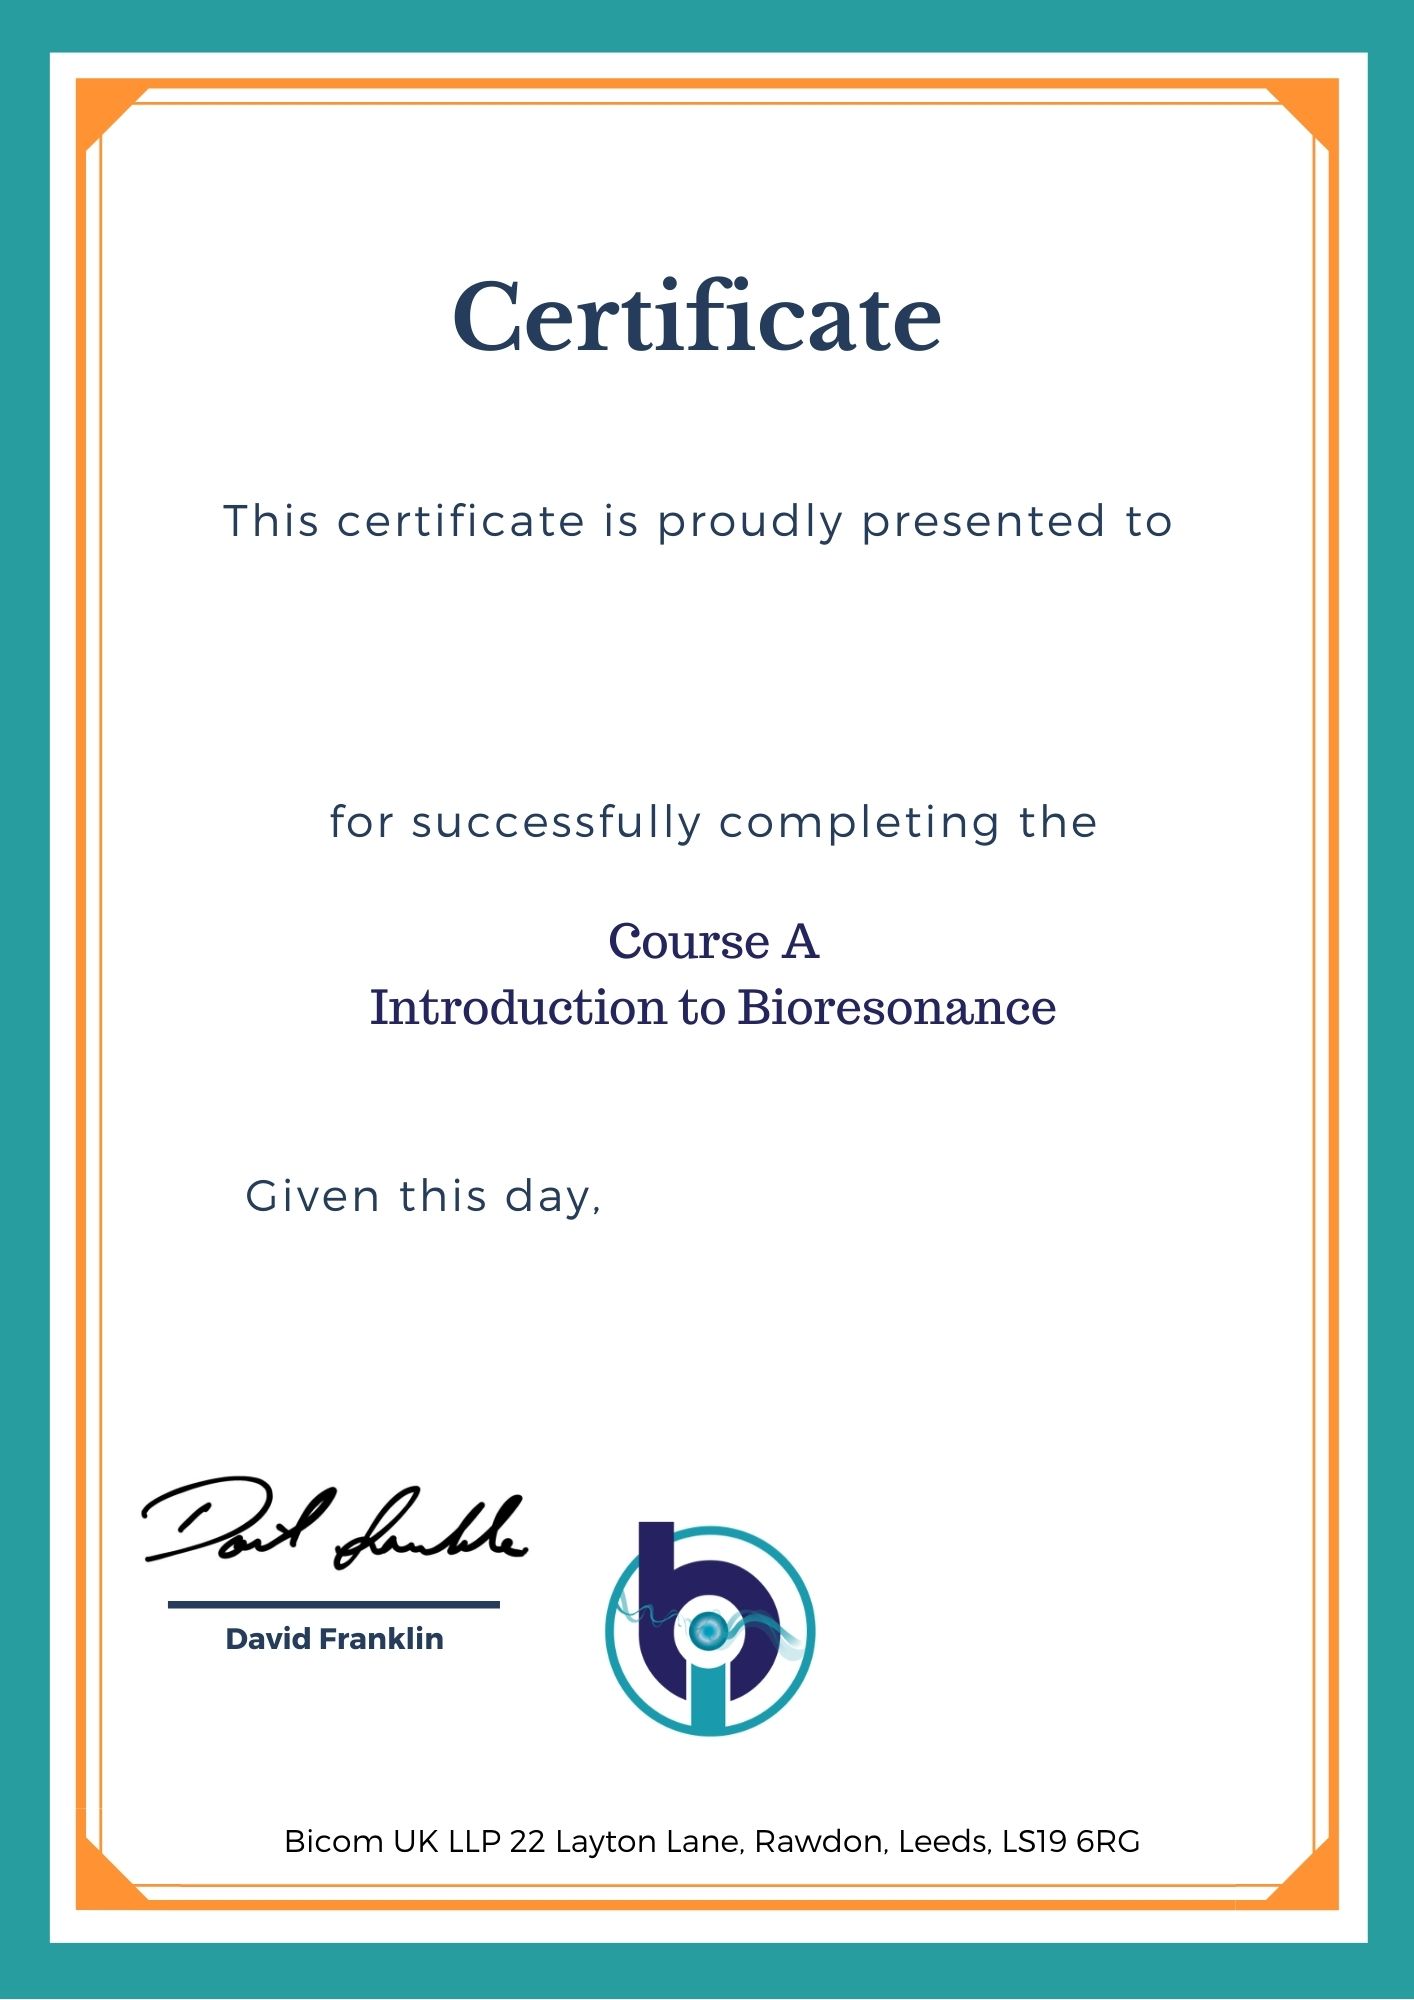 Course A certificate